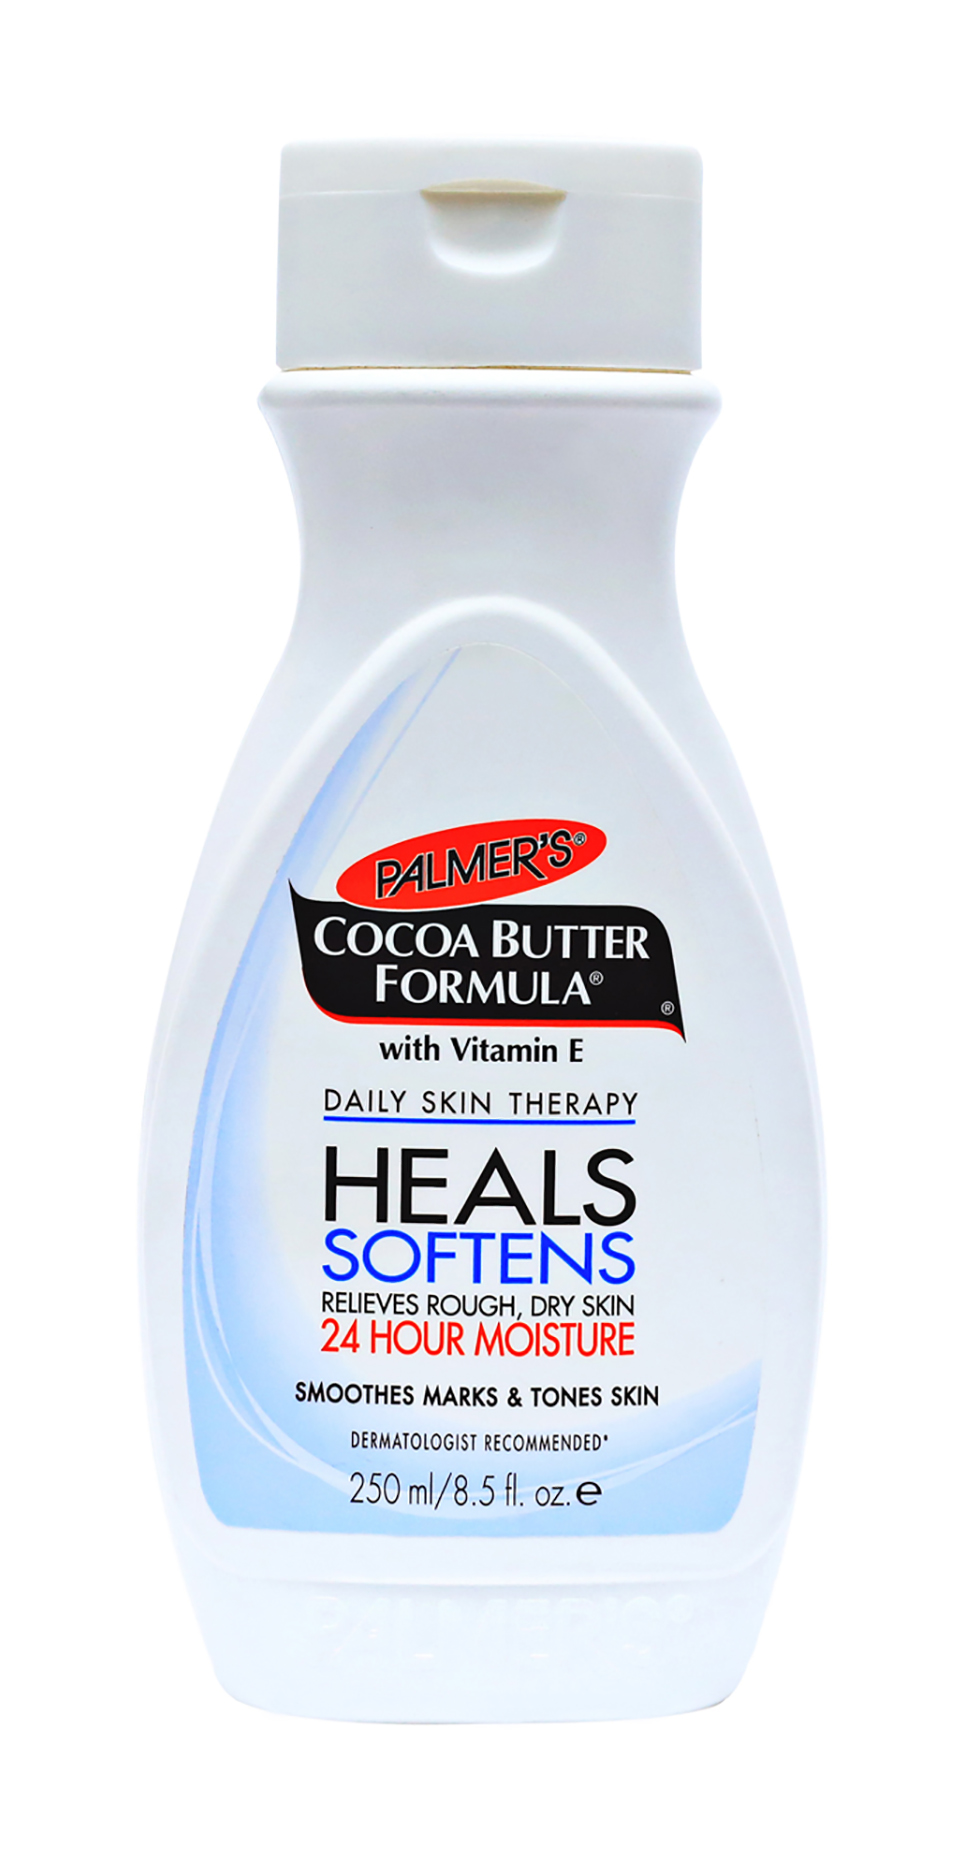 Лосьон Palmers Cocoa Butter Formula with Vitamin E 24H Moisture, 250мл сироп ягод черники витаминизир 250мл